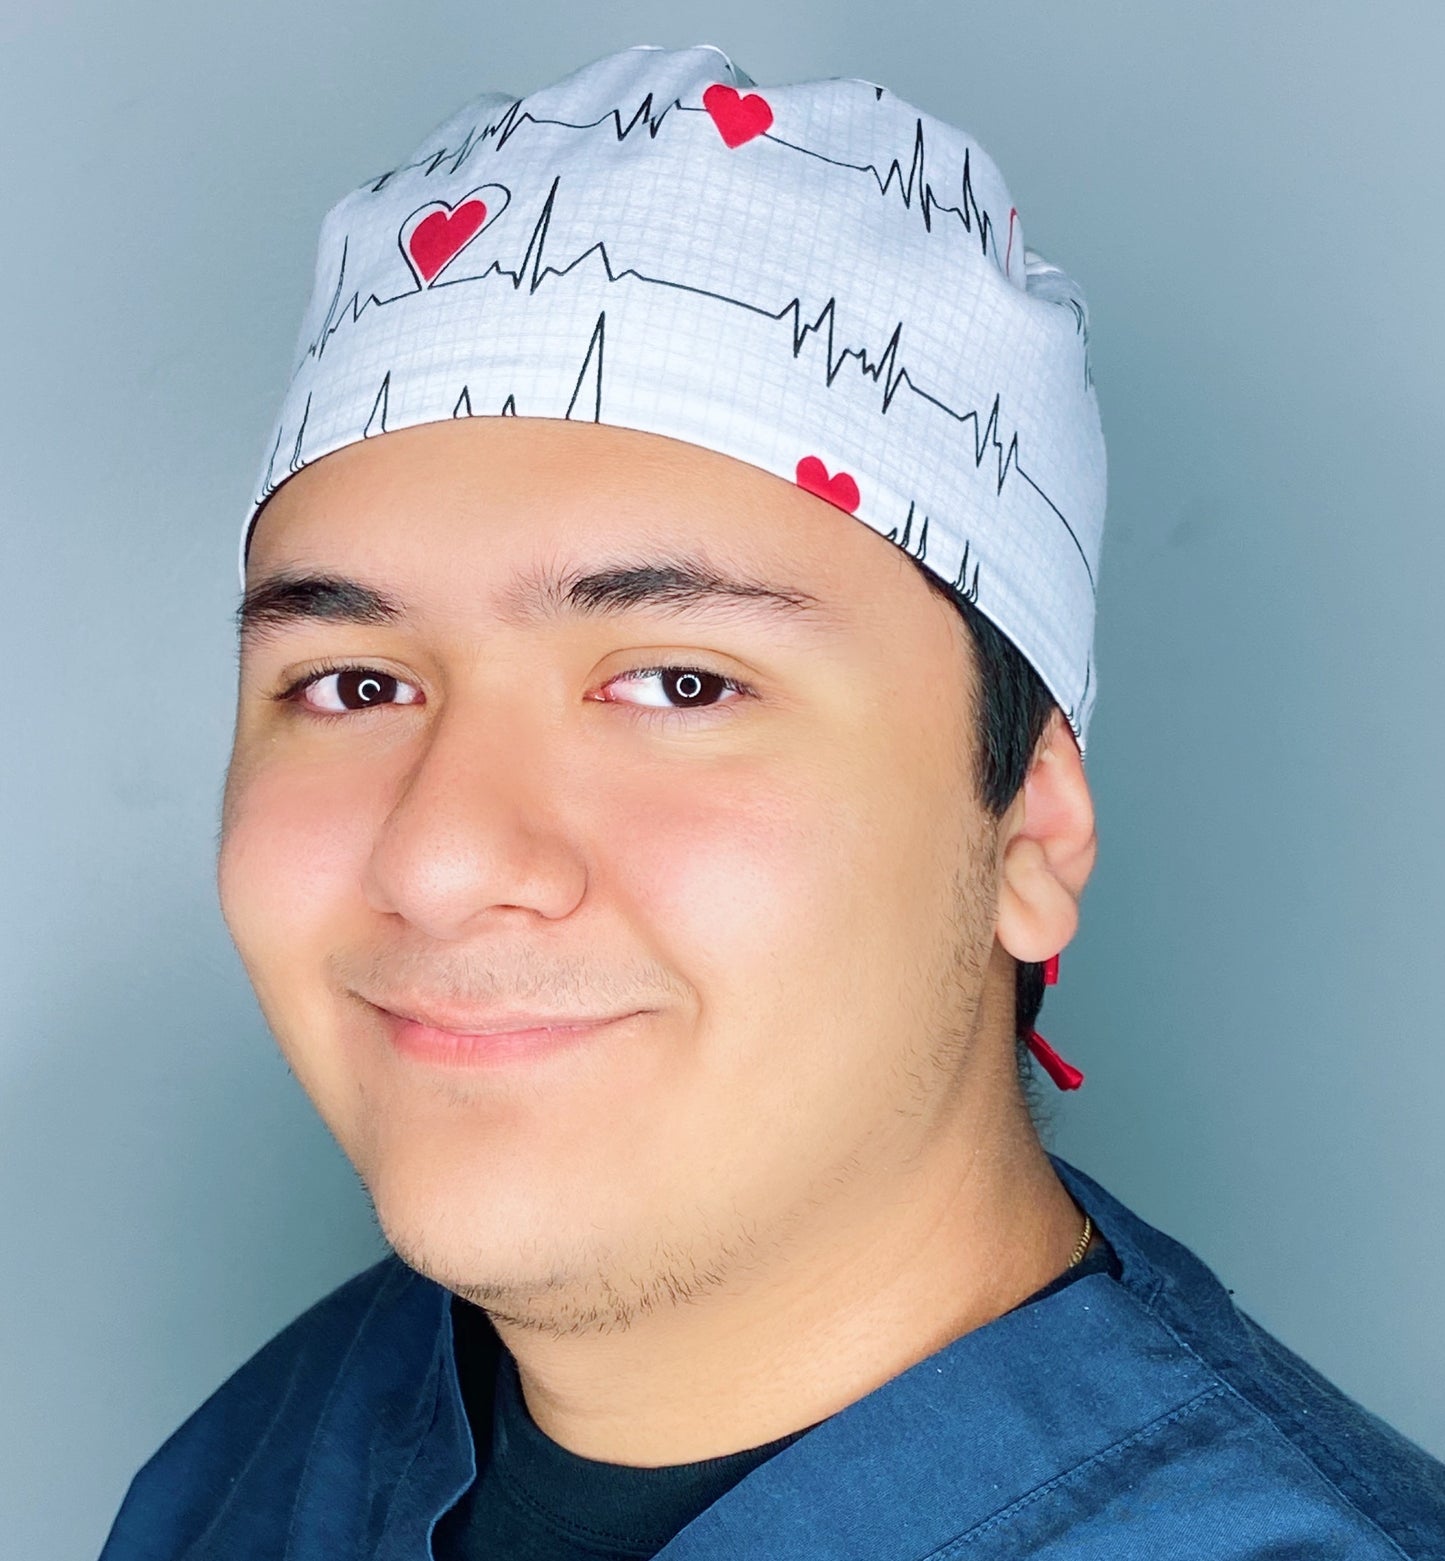 EKG & Hearts on White Unisex Medical Theme Scrub Cap